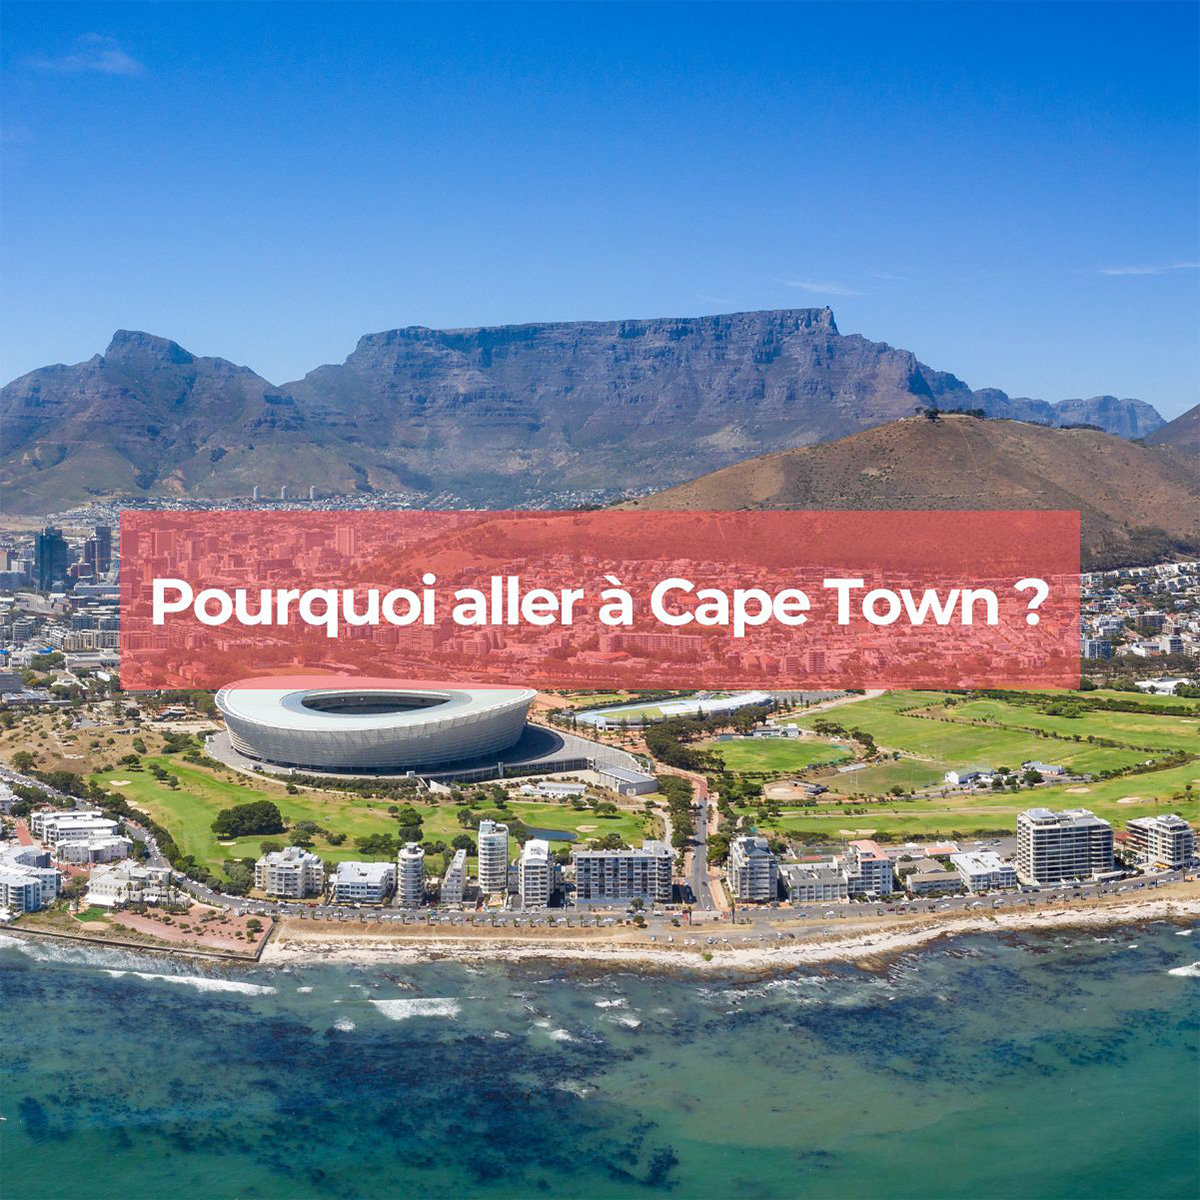 Pourquoi aller à Cape Town lors de votre voyage ?